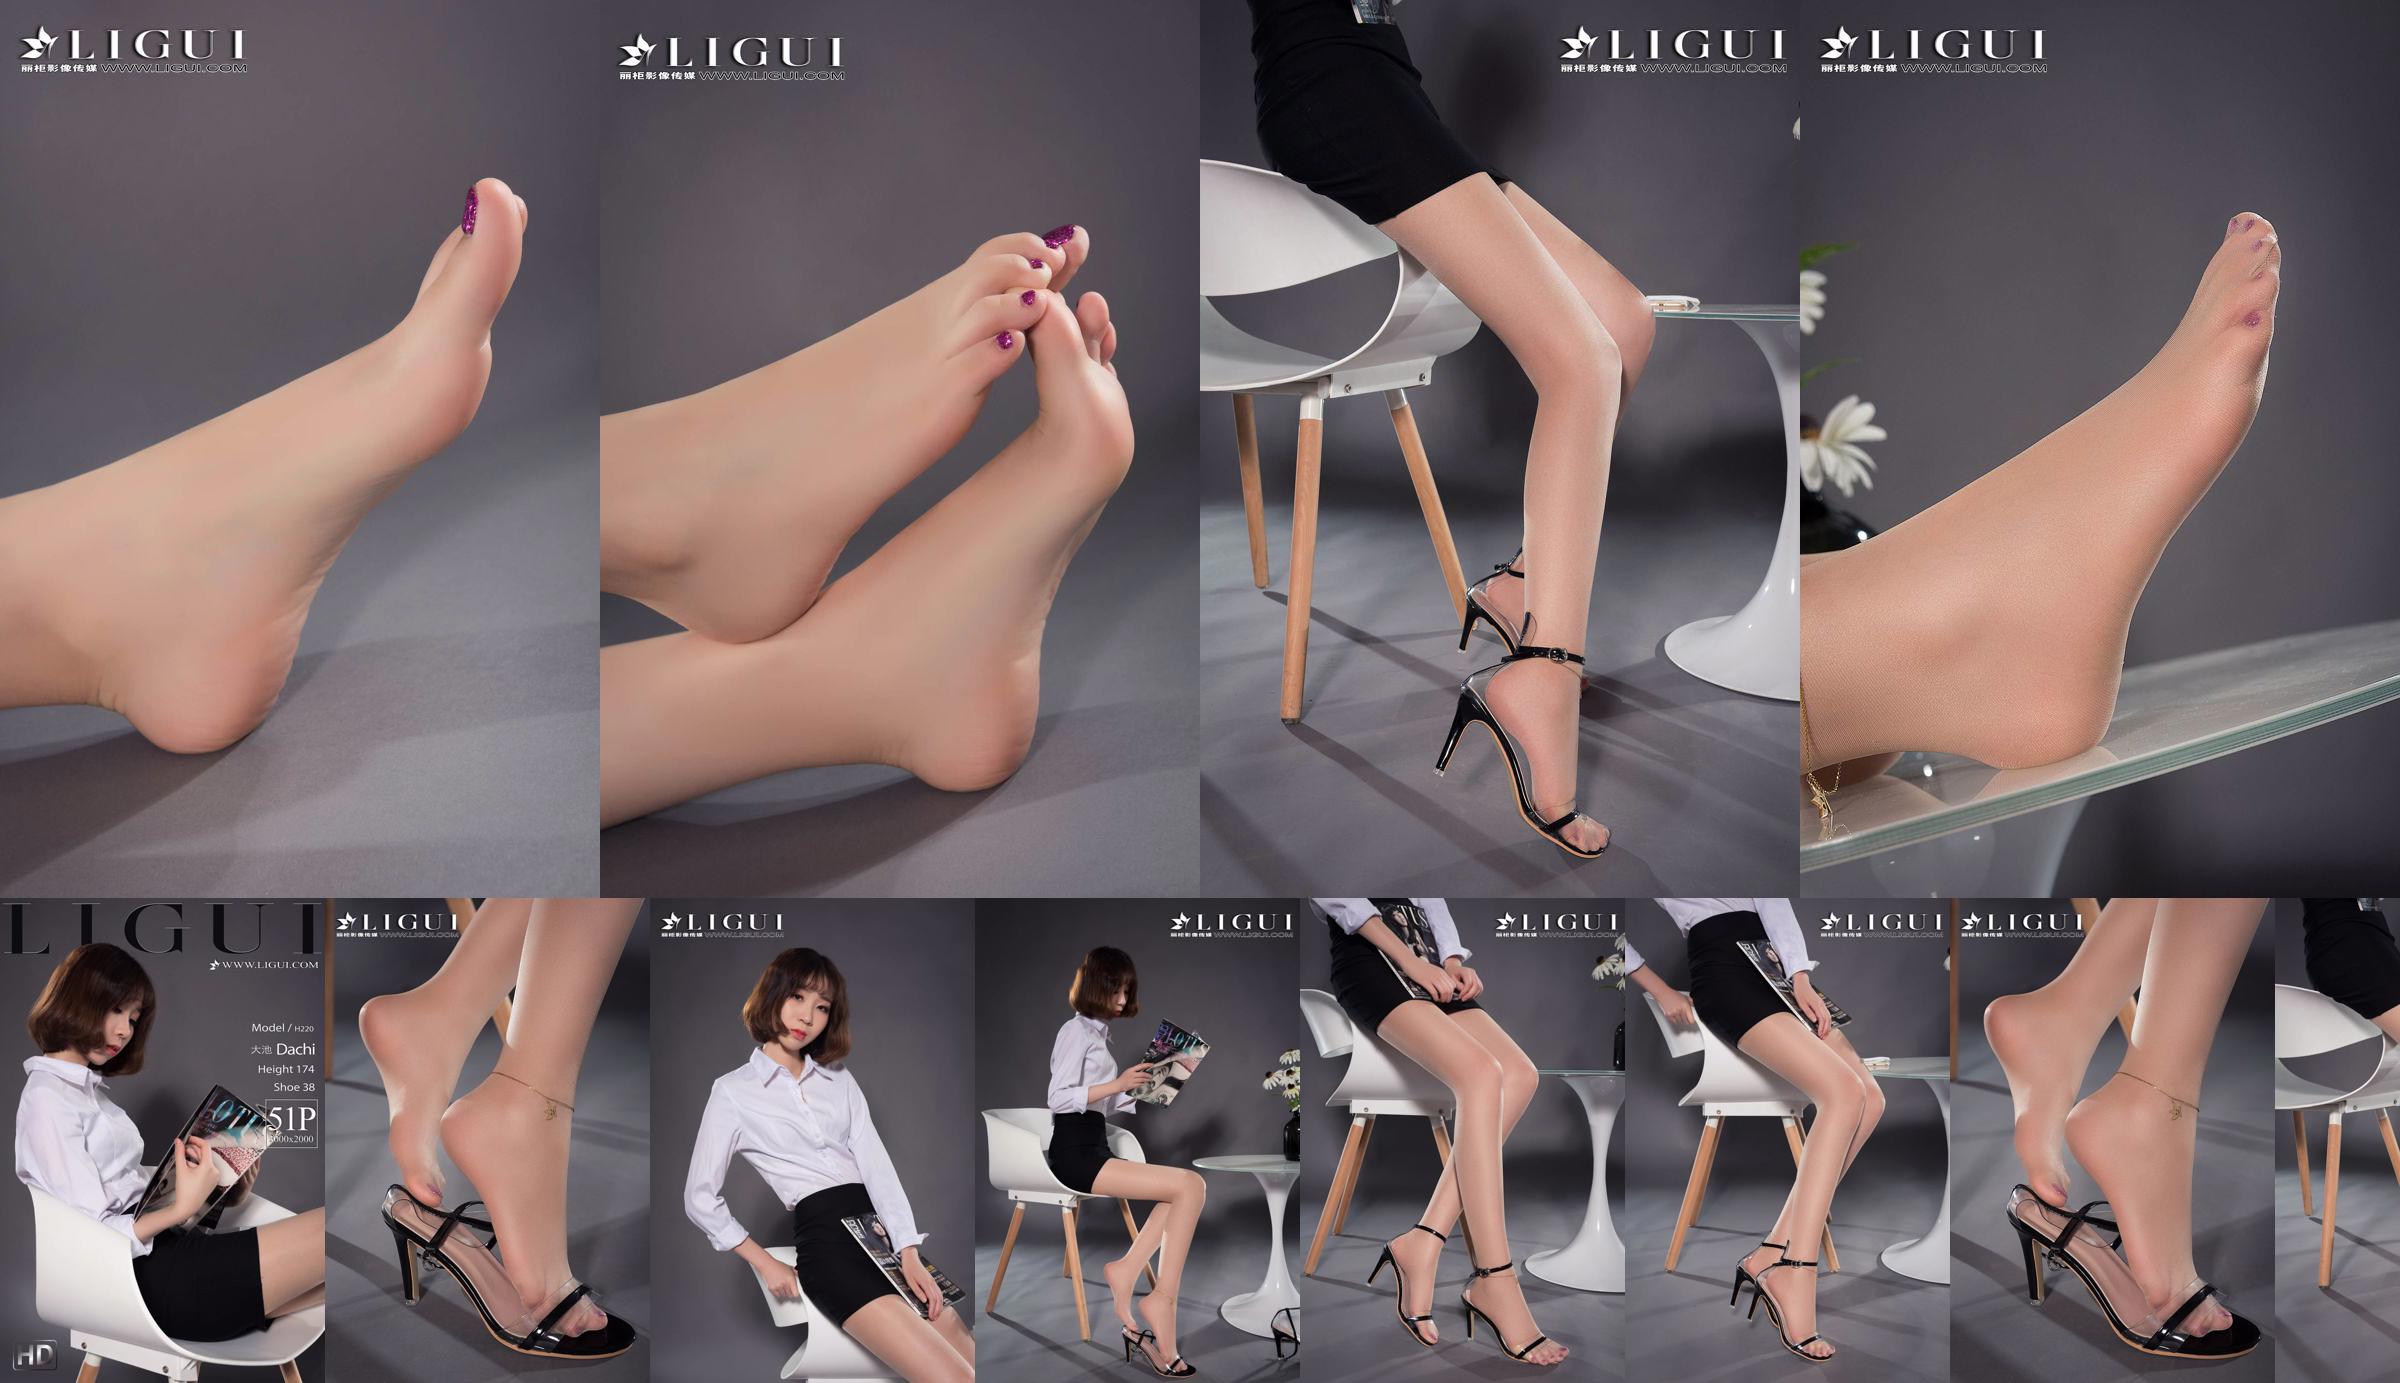 Người mẫu chân Oike "Heo với giày cao gót CV" [Ligui Ligui] Vẻ đẹp Internet No.c015e8 Trang 4